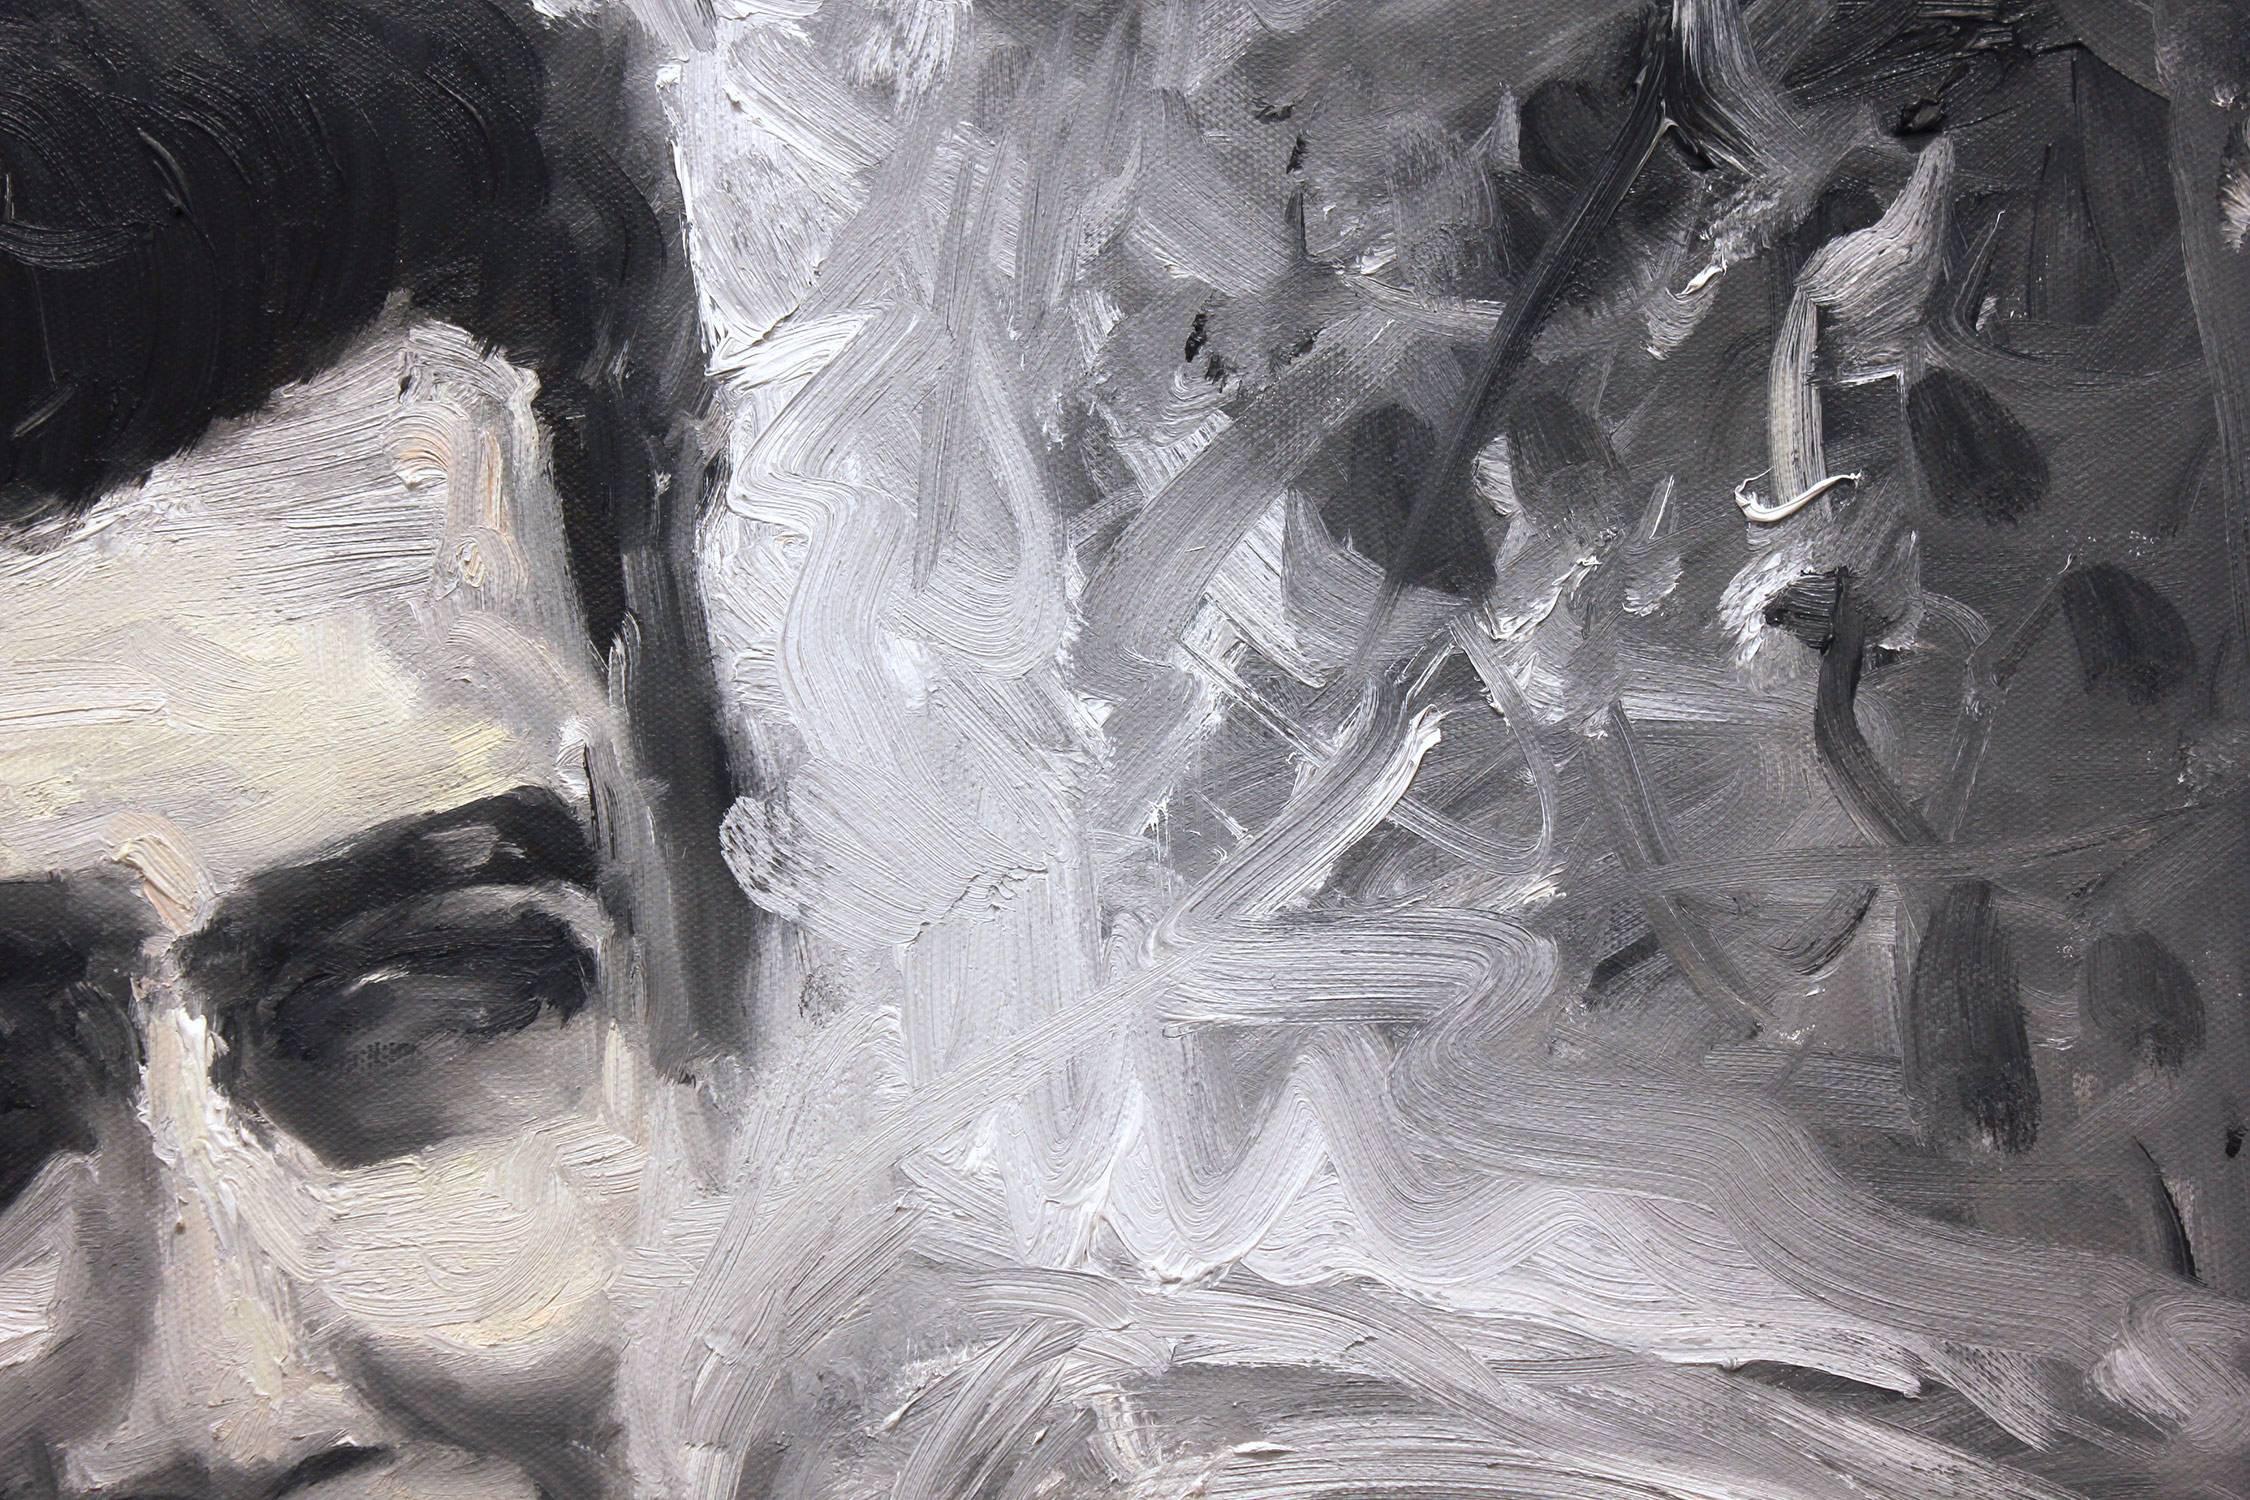 Une représentation étonnante de James Deans réalisée de manière abstraite et impressionniste avec une forte utilisation de la peinture et on peut également trouver des traits audacieux de blanc, de gris et de noir. Whiting crée un contraste noir et